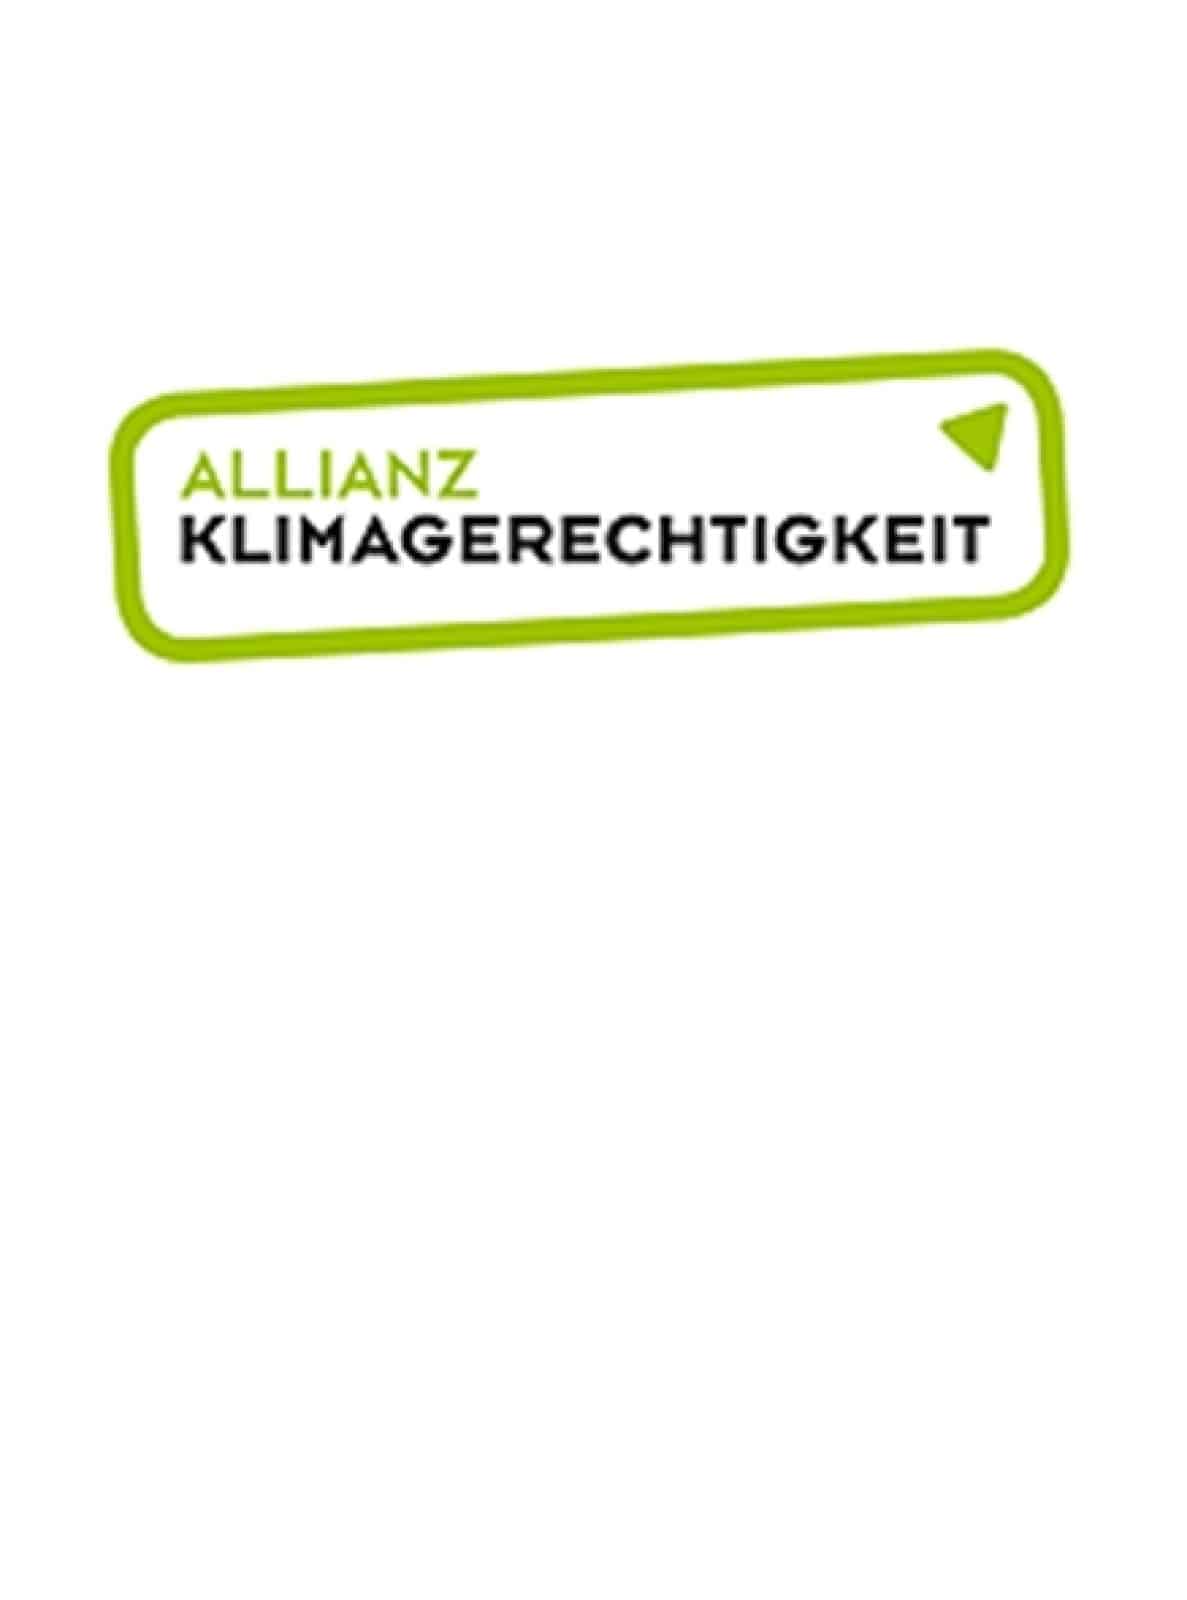 Allianz - Klimagerechtigkeit, © by Allianz - Klimagerechtigkeit.jpg